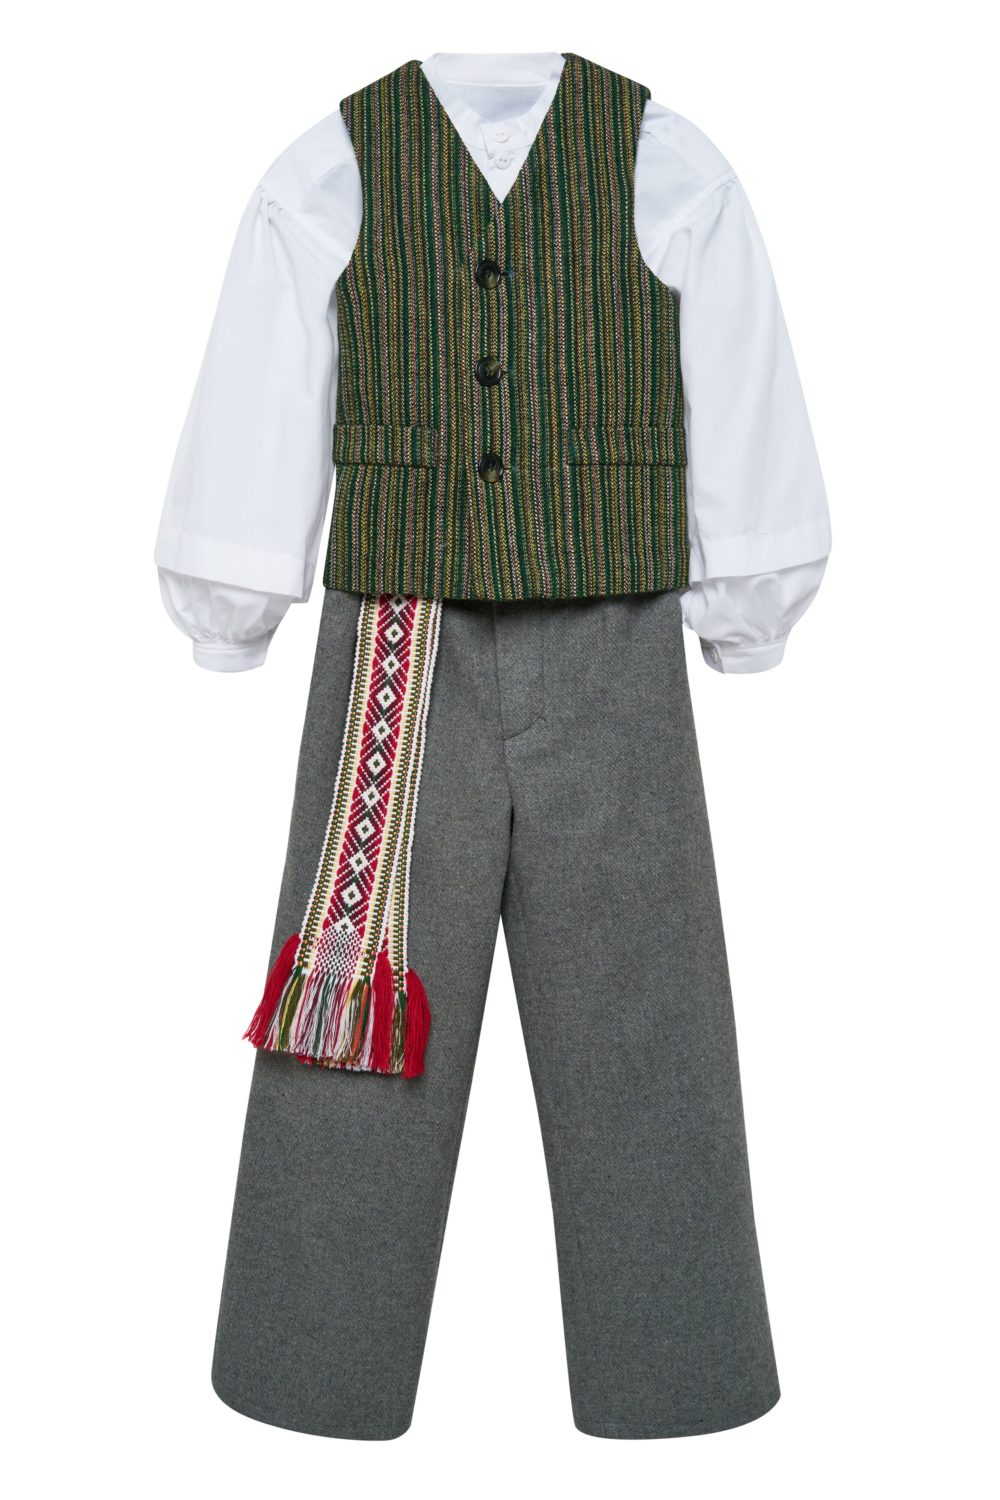 Berniuko/vaikino tautinis kostiumas KBER1